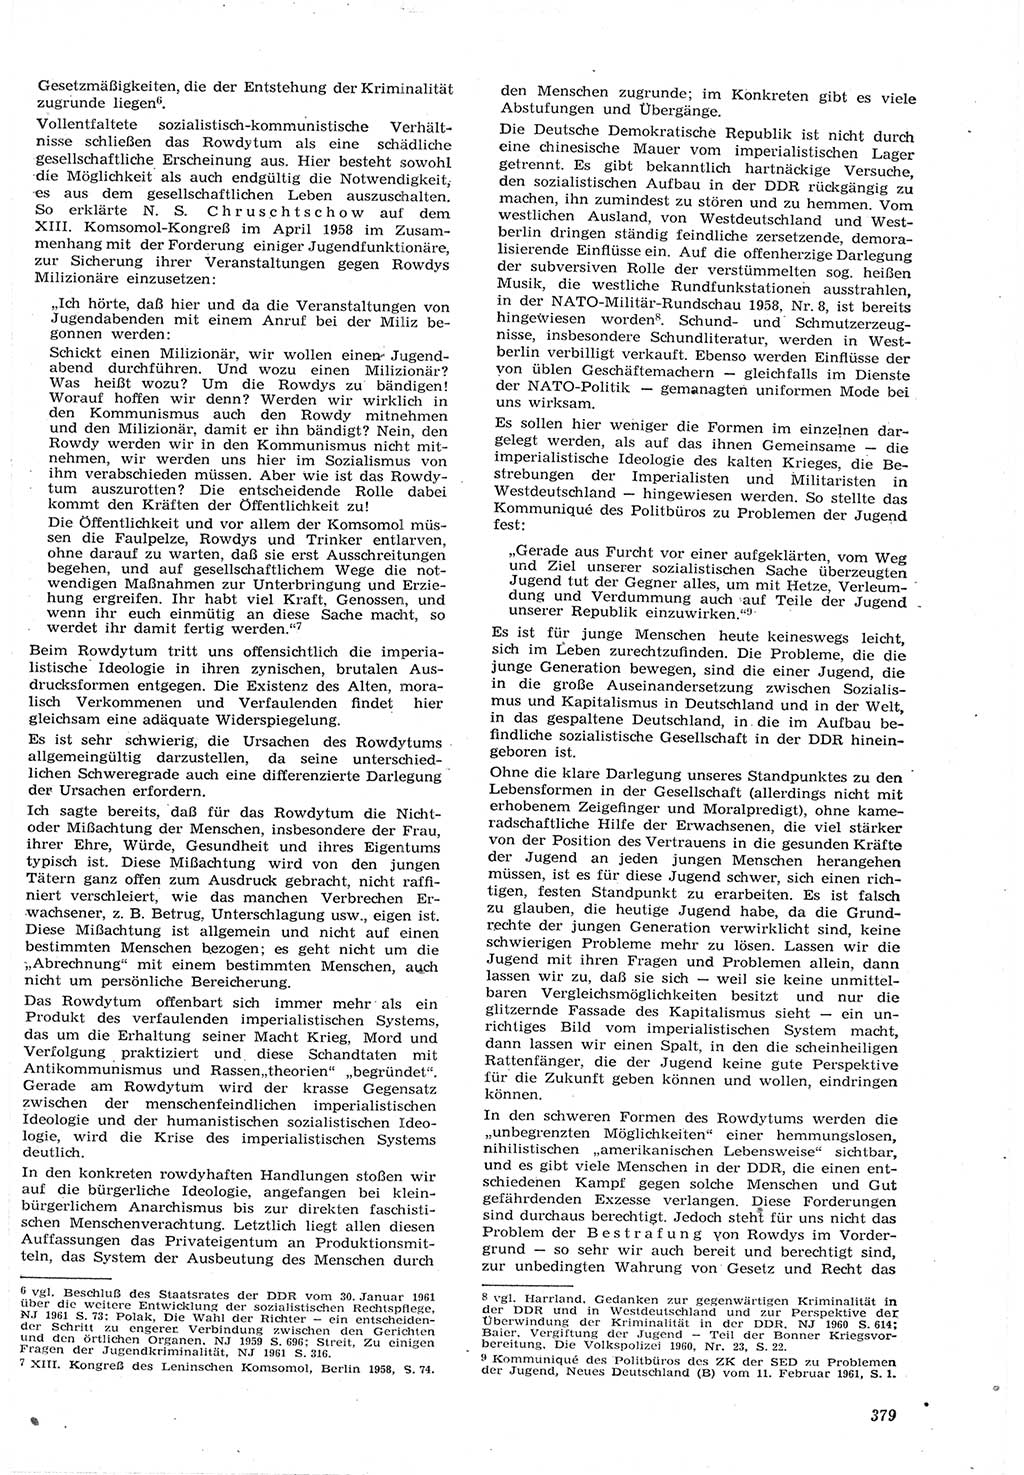 Neue Justiz (NJ), Zeitschrift für Recht und Rechtswissenschaft [Deutsche Demokratische Republik (DDR)], 15. Jahrgang 1961, Seite 379 (NJ DDR 1961, S. 379)